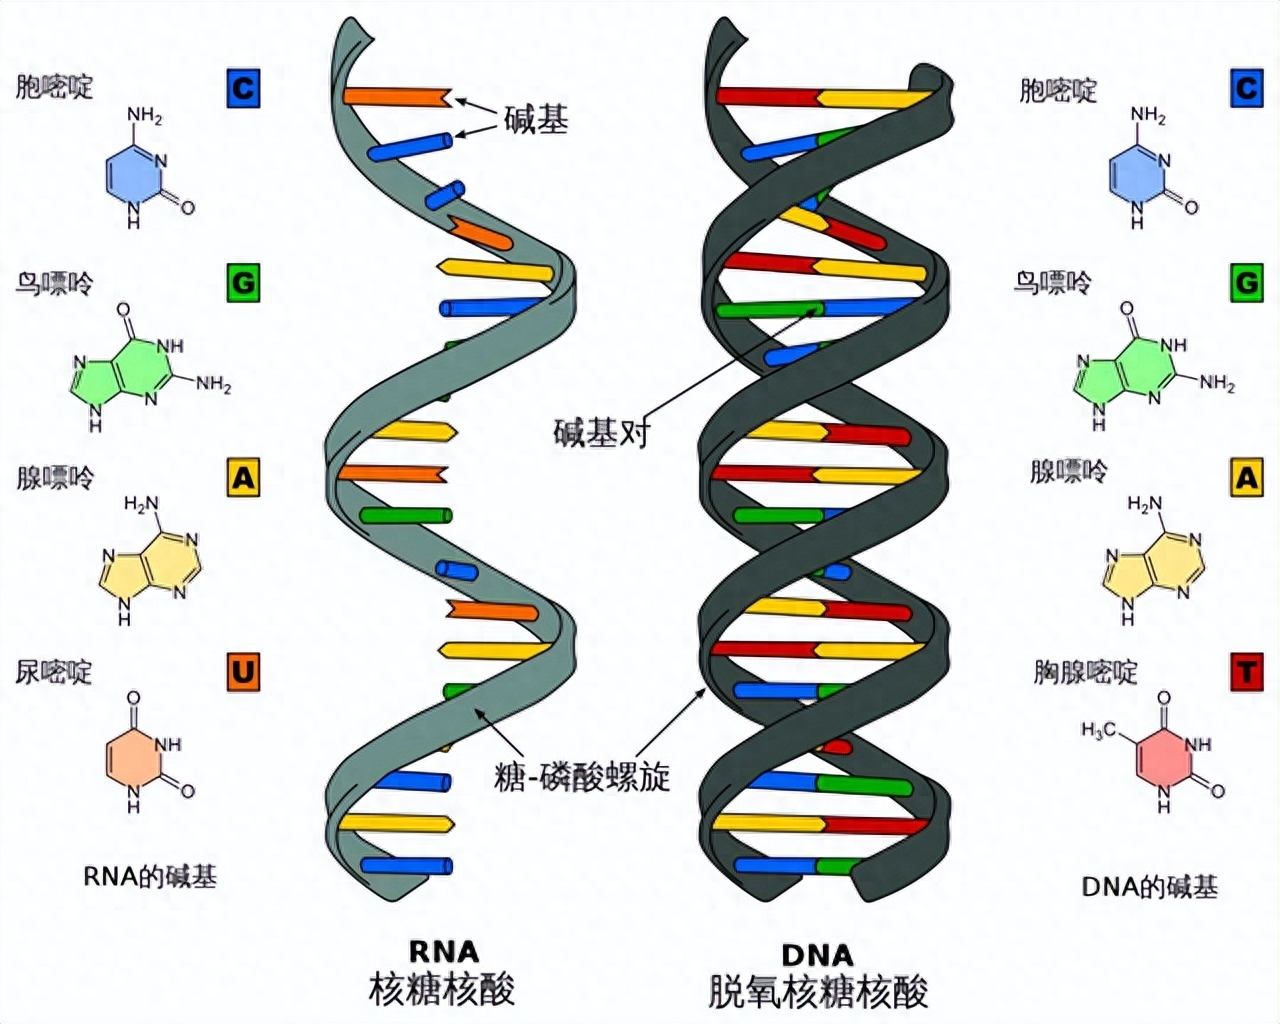 碱基分子就像拼图一样,可以拼成不同的形状和颜色,从而形成不同的dna